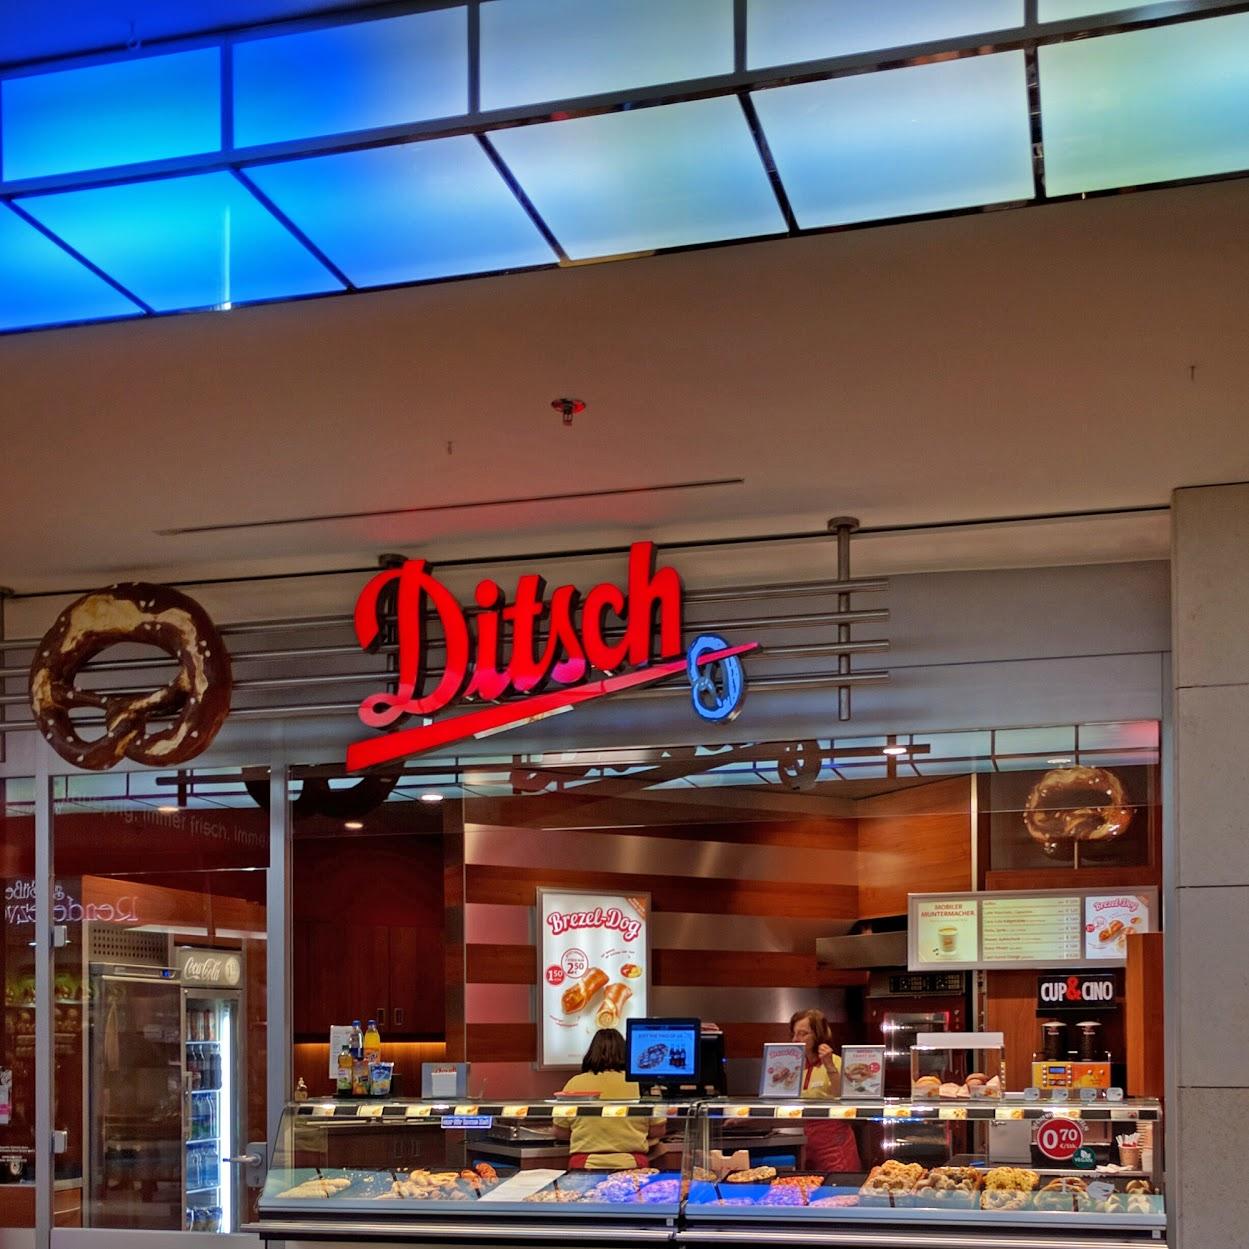 Restaurant "Ditsch" in Zwickau